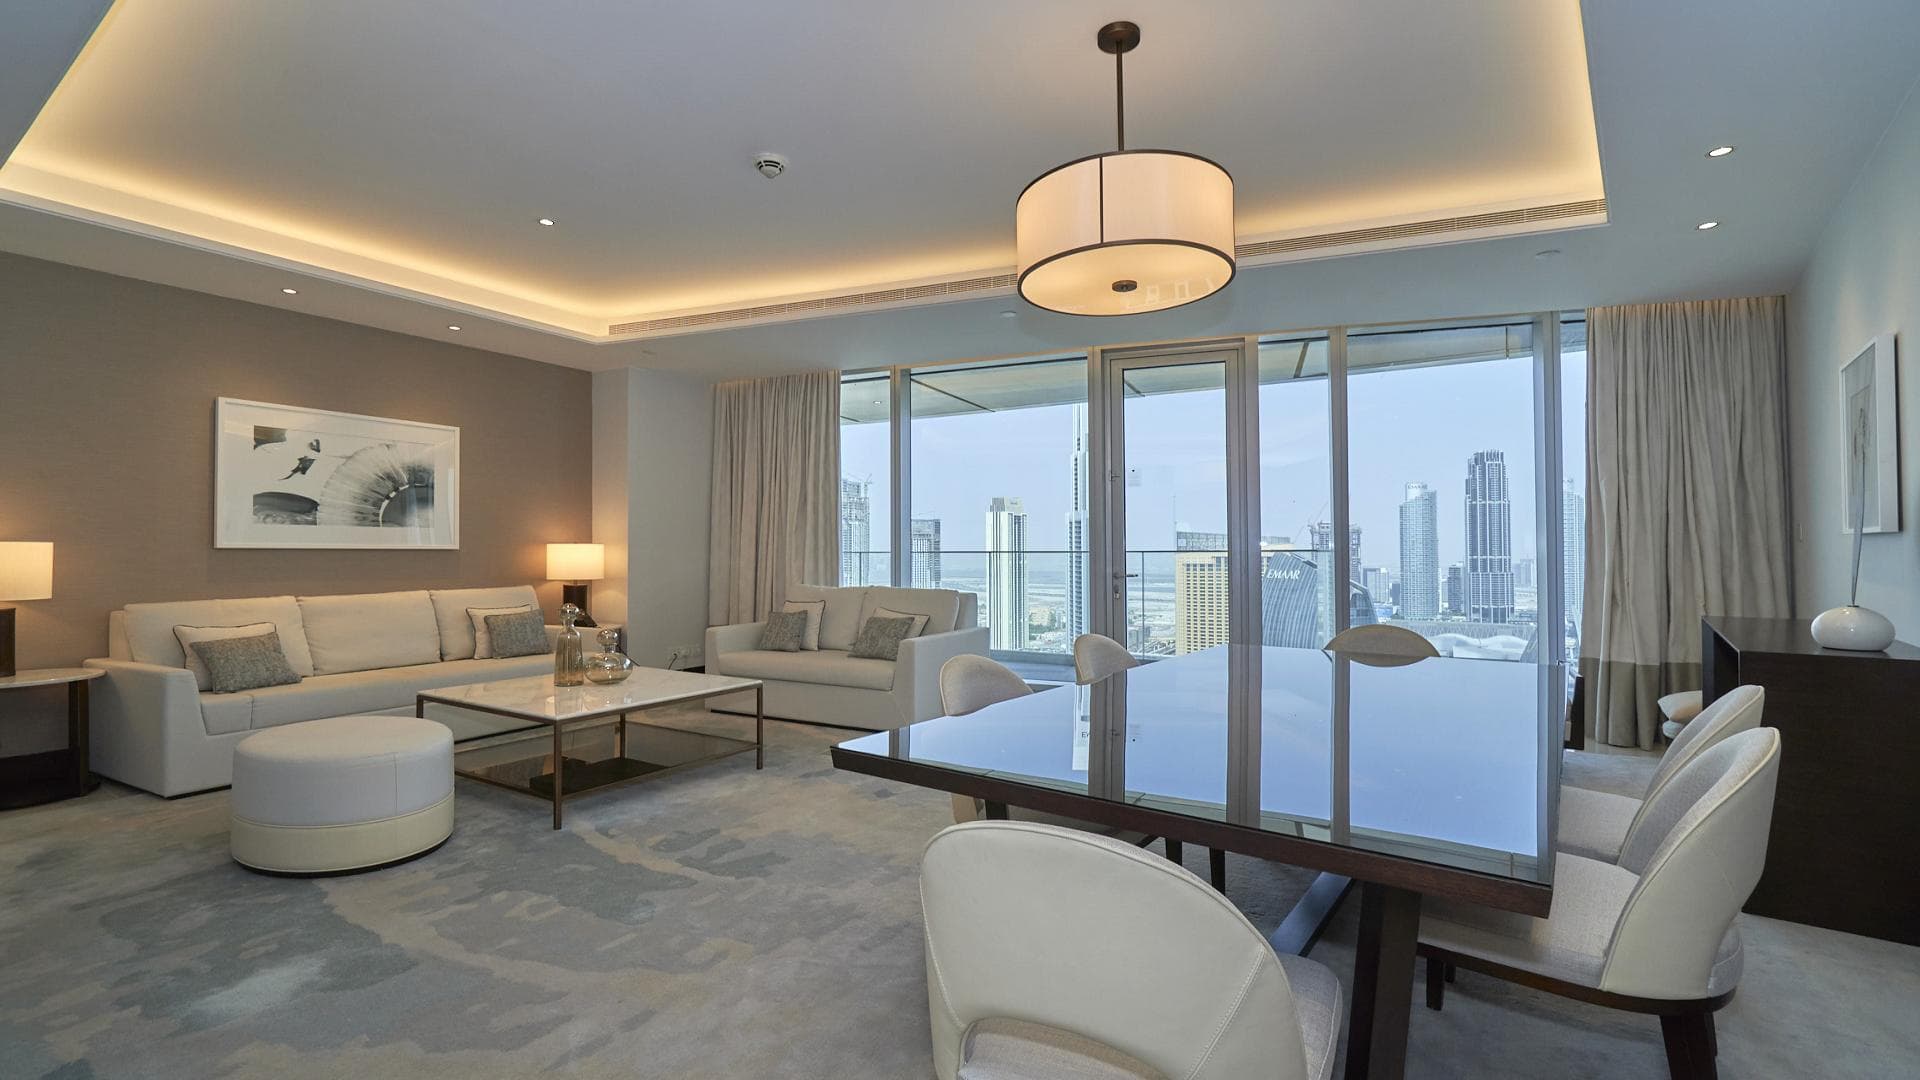 2 Bedroom Apartment For Rent Al Thamam 09 Lp36577 2e52a3bd1dfb7a00.jpg